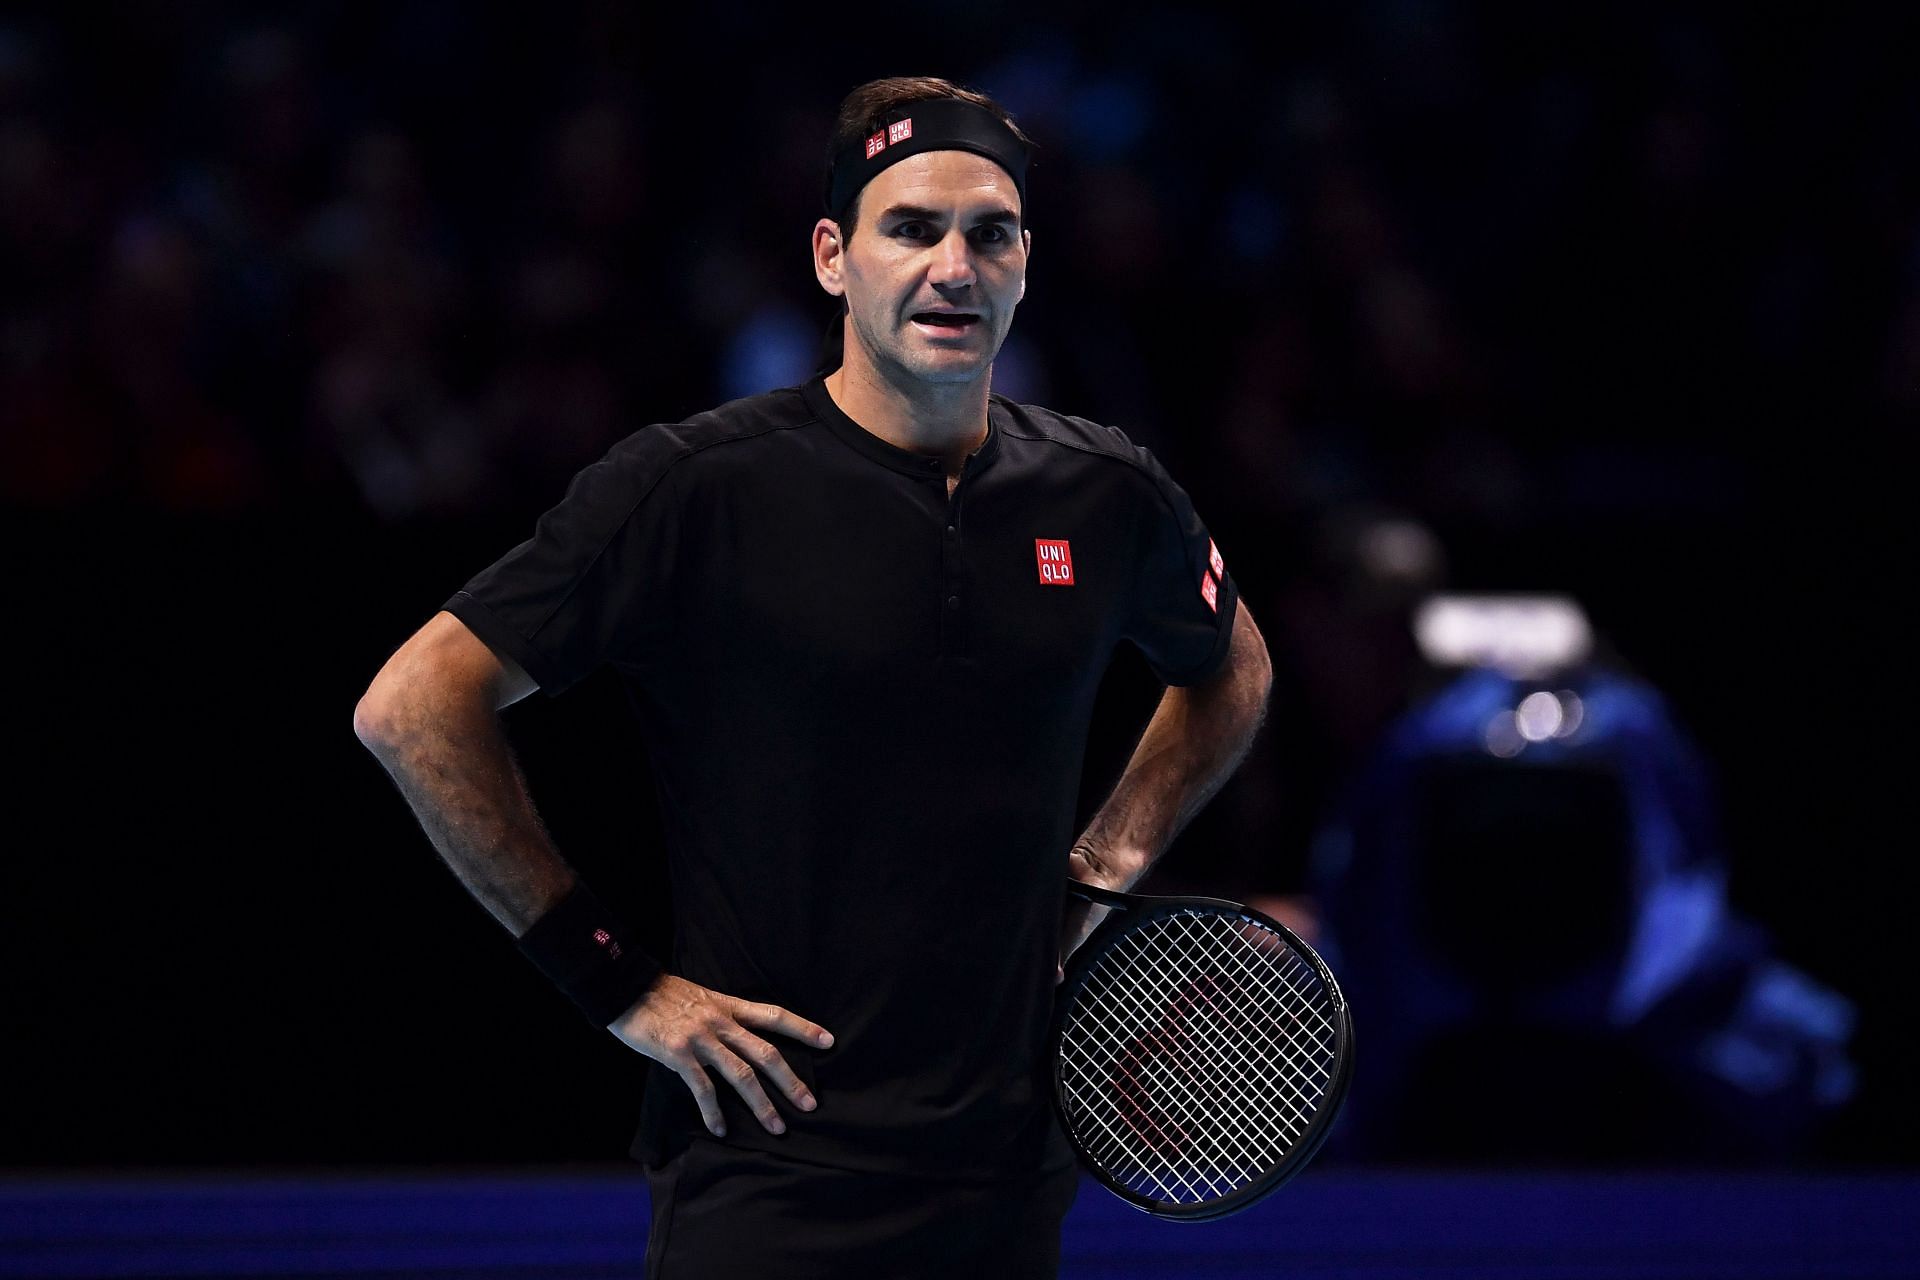 Roger Federer at the 2019 ATP Finals